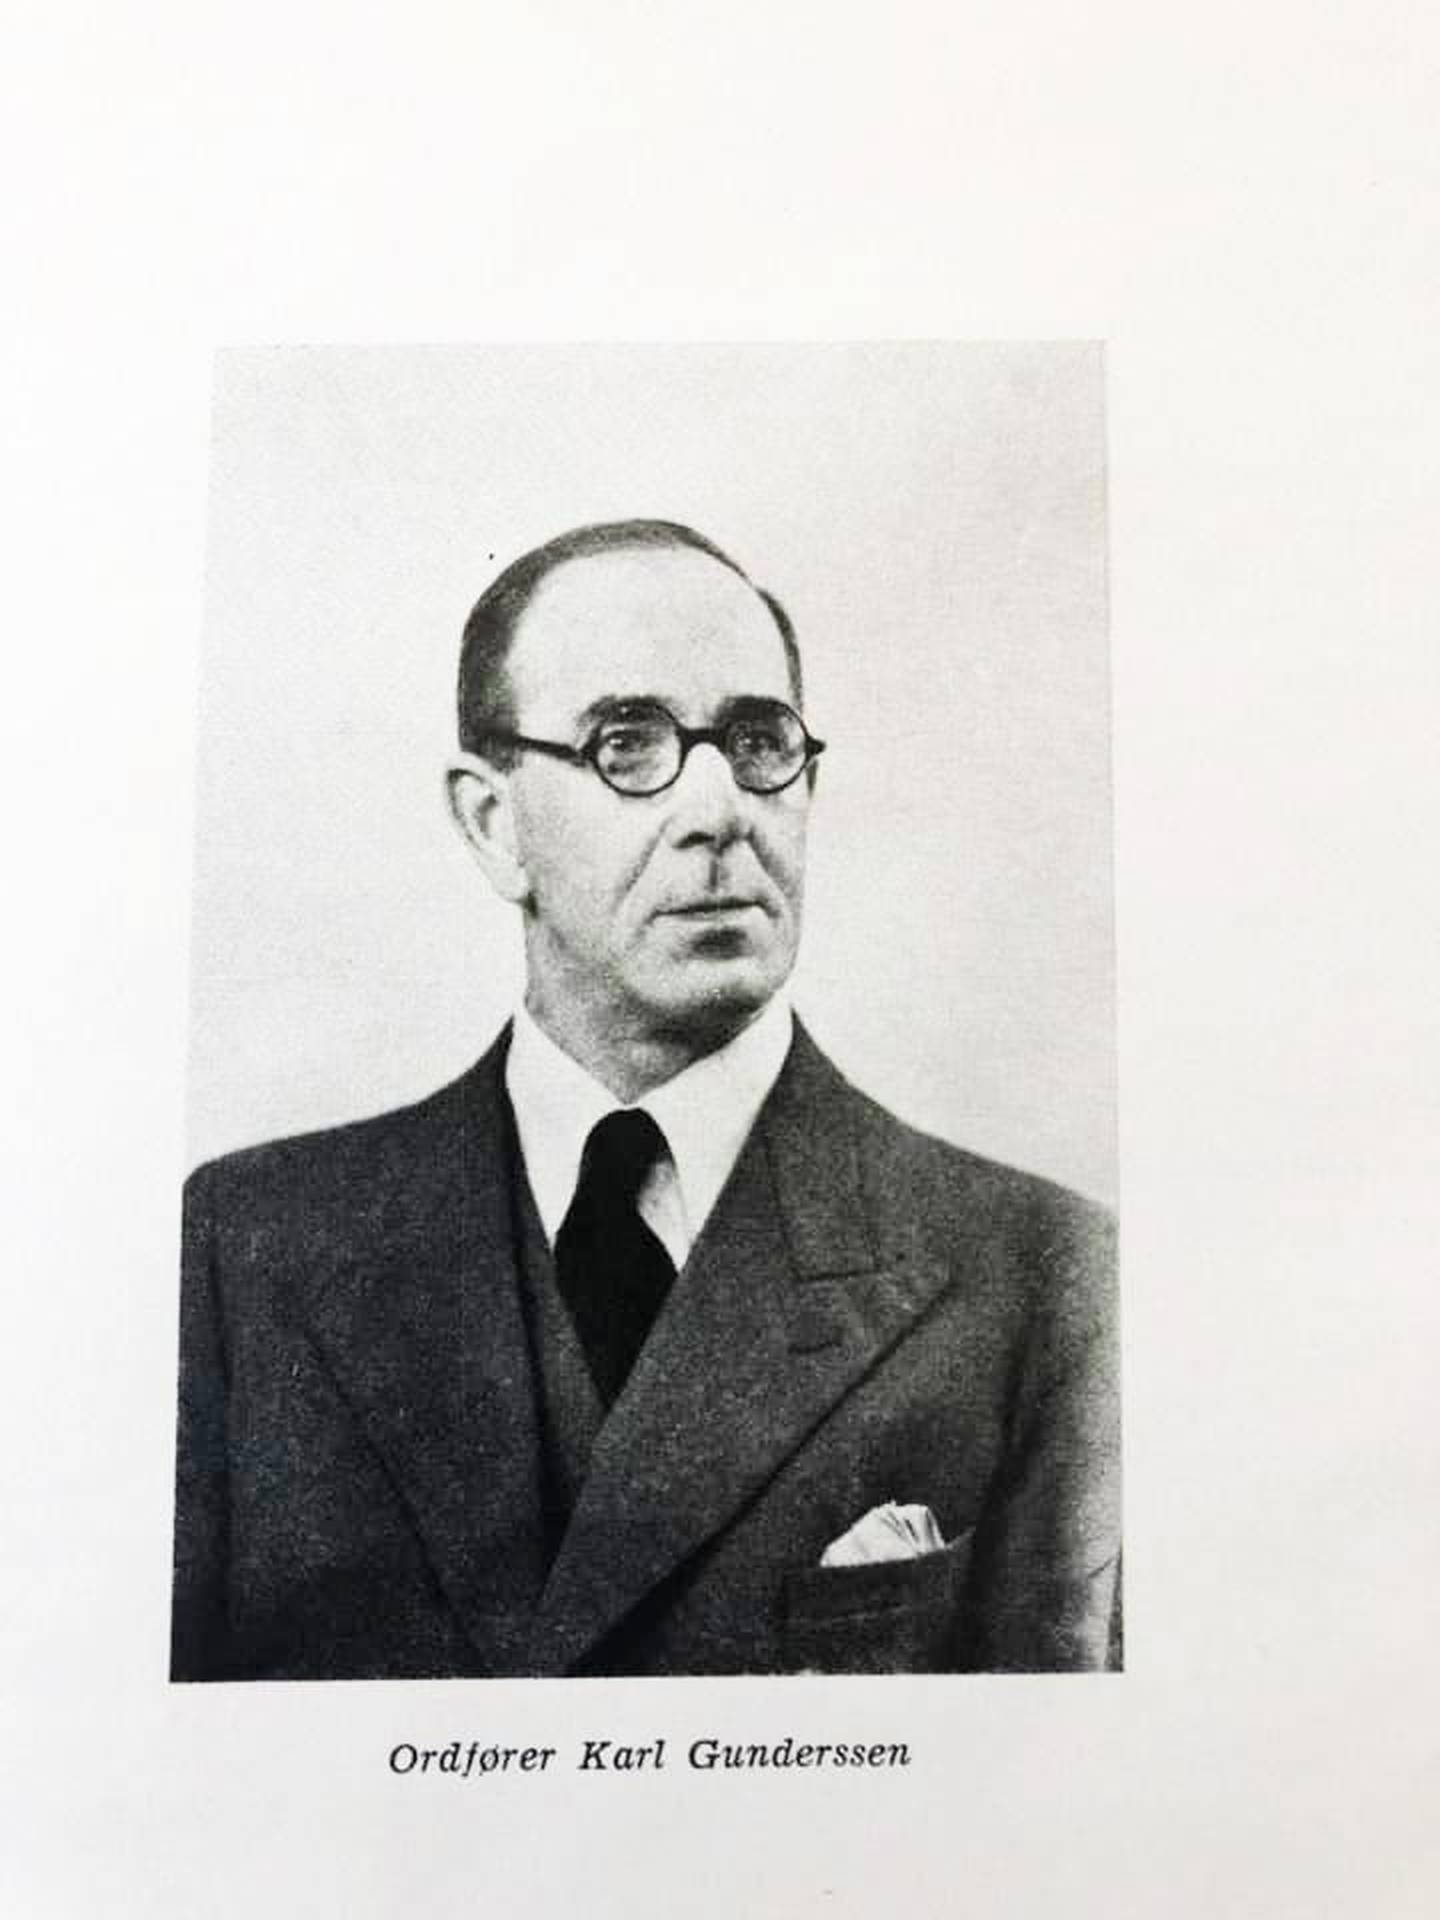 Karl Gundersen var ordfører i Drammen under invasjonen i 1940, og har skildret invasjonen og dagene etter i sin dagbok.